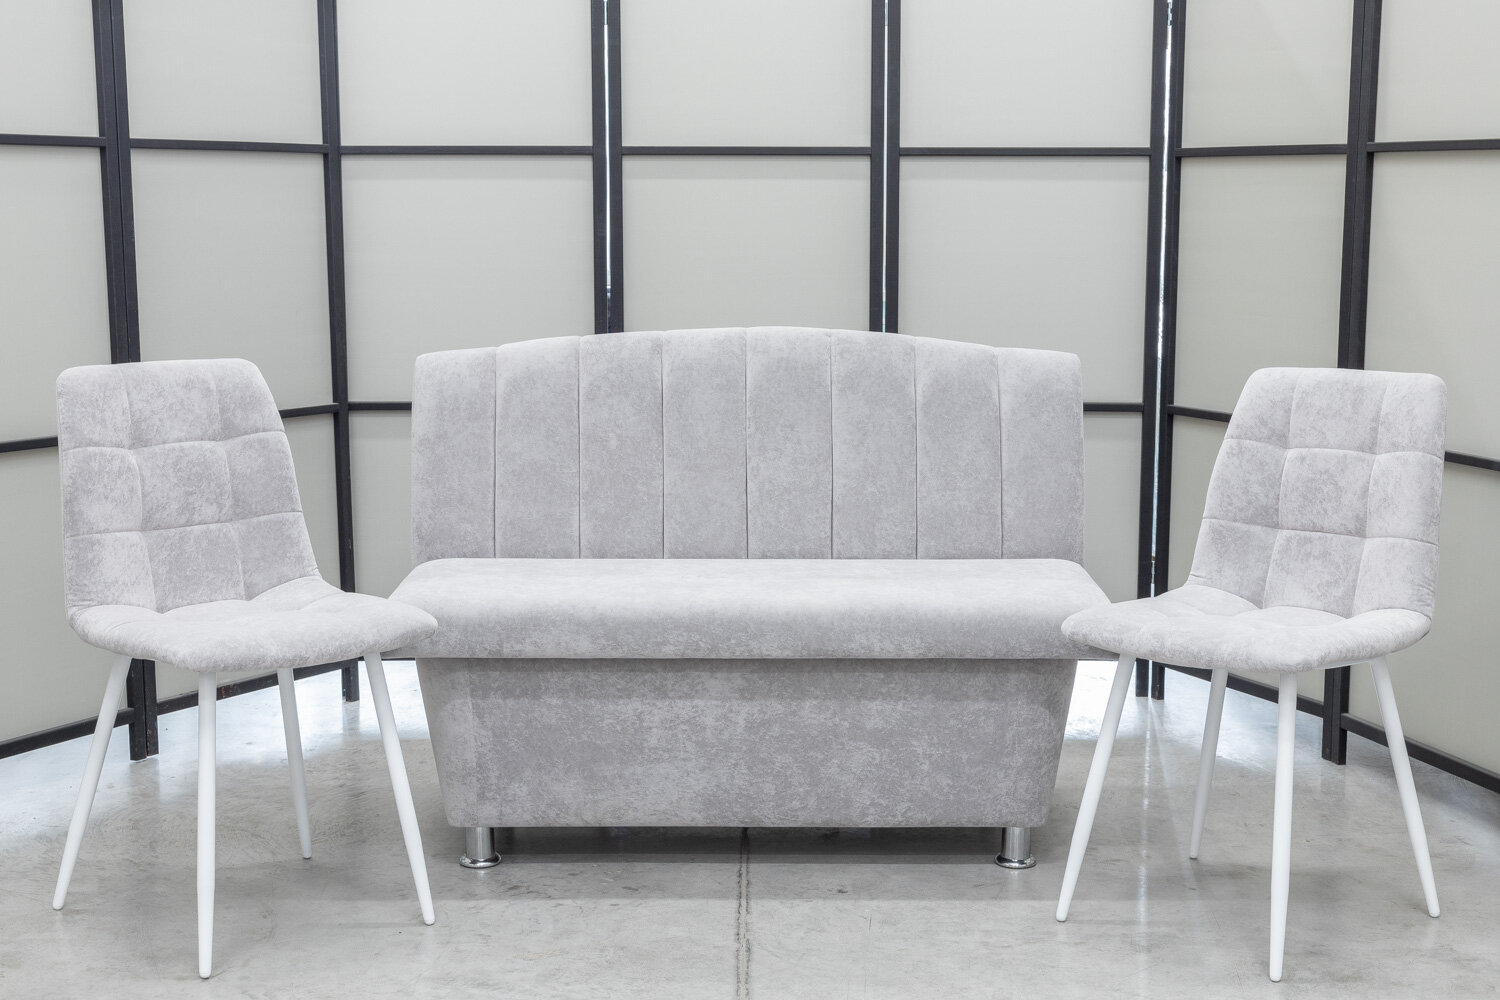 Кухонный диван Альт со стульями (2 шт.), 120х56 см, обивка моющаяся, антивандальная, антикоготь, цвет - светло-серый - фотография № 2